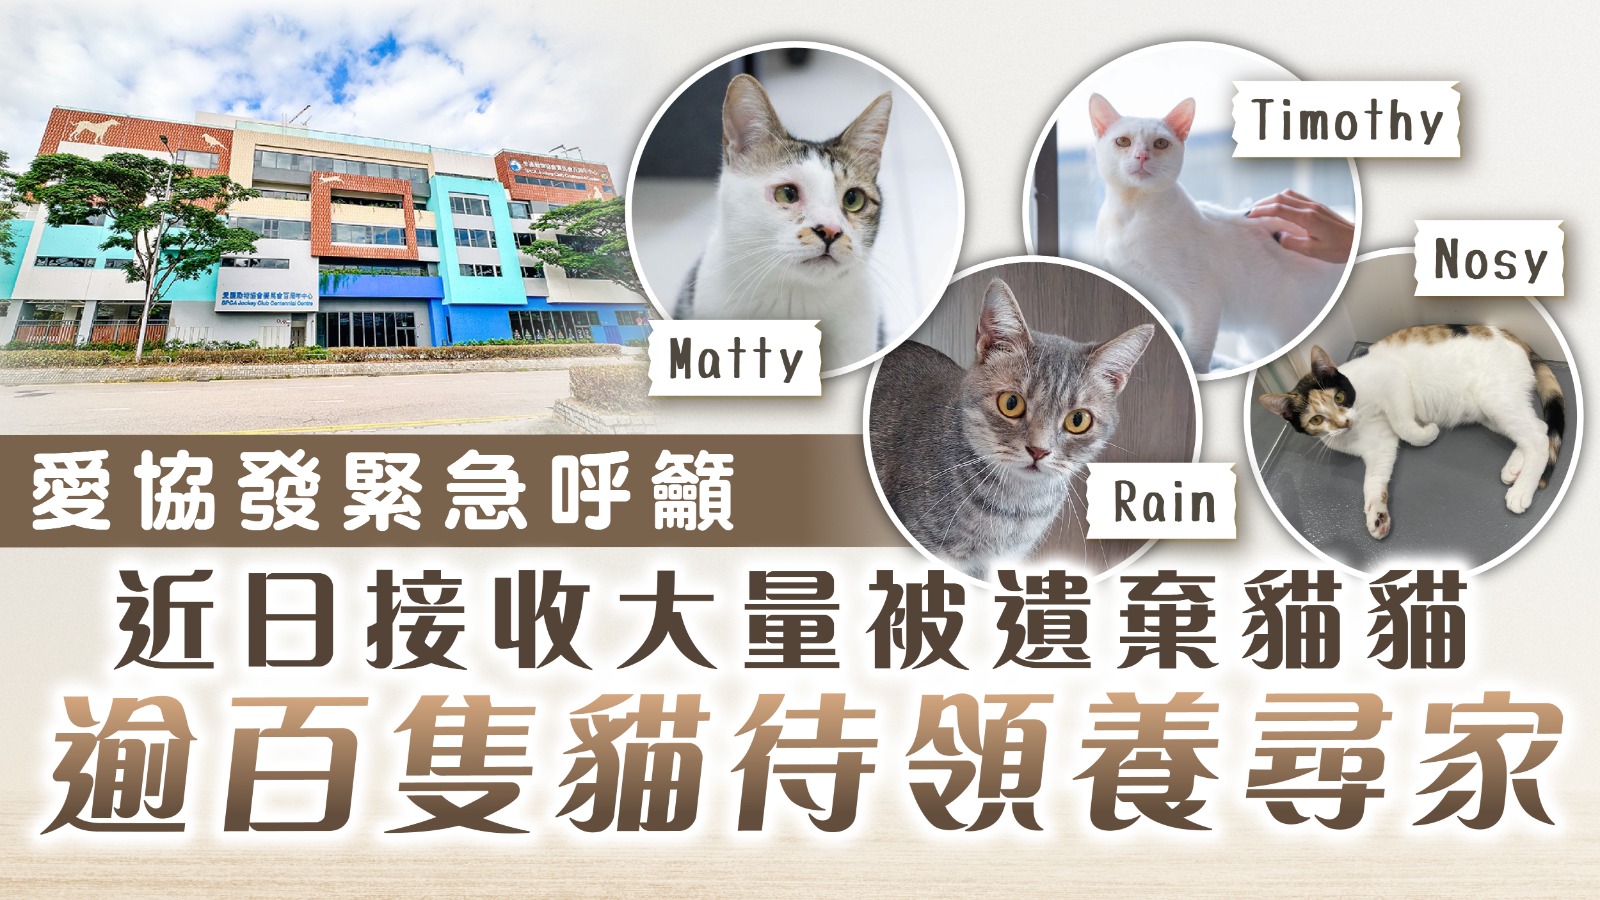 Love Association for Adoption｜La Love Association a récemment lancé un appel d’urgence pour accueillir un grand nombre de chats abandonnés, avec plus de 100 chats en attente d’adoption et de recherche d’un foyer | Hong Kong Life